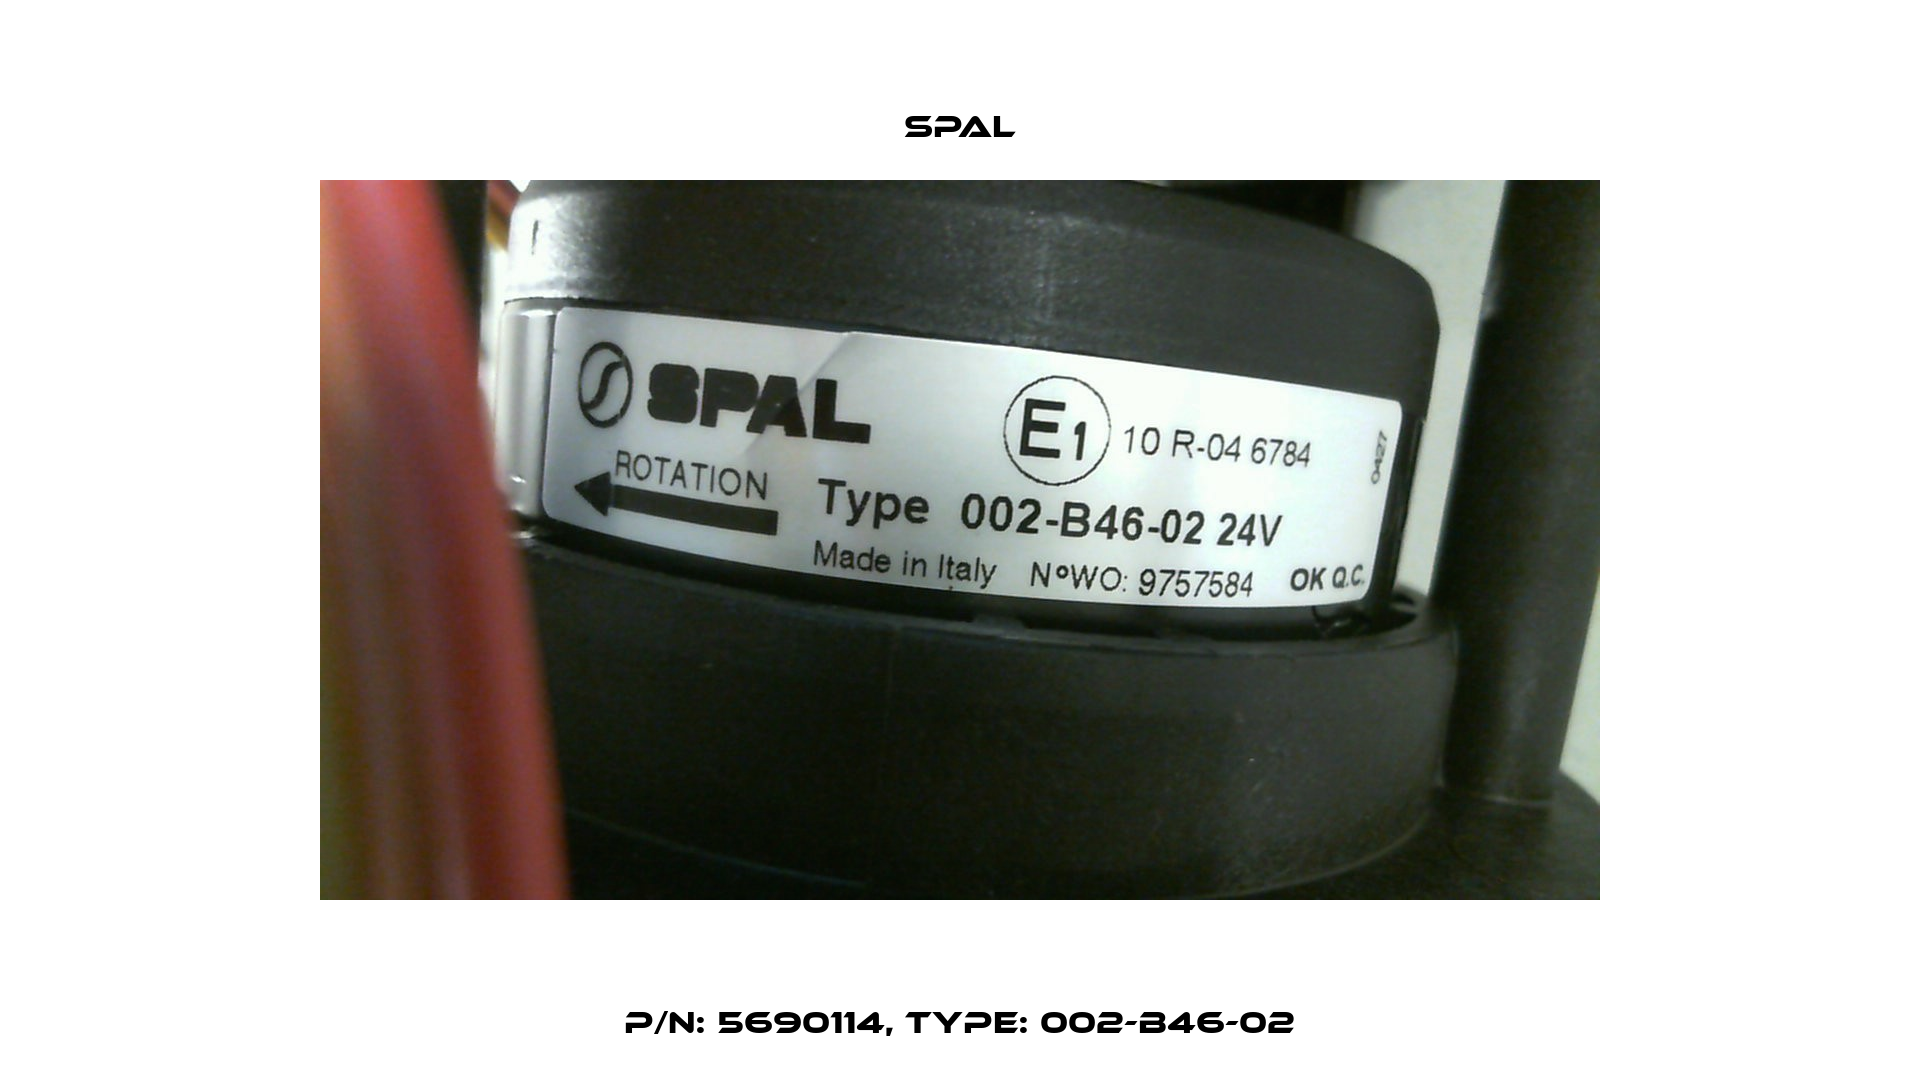 P/N: 5690114, Type: 002-B46-02 SPAL